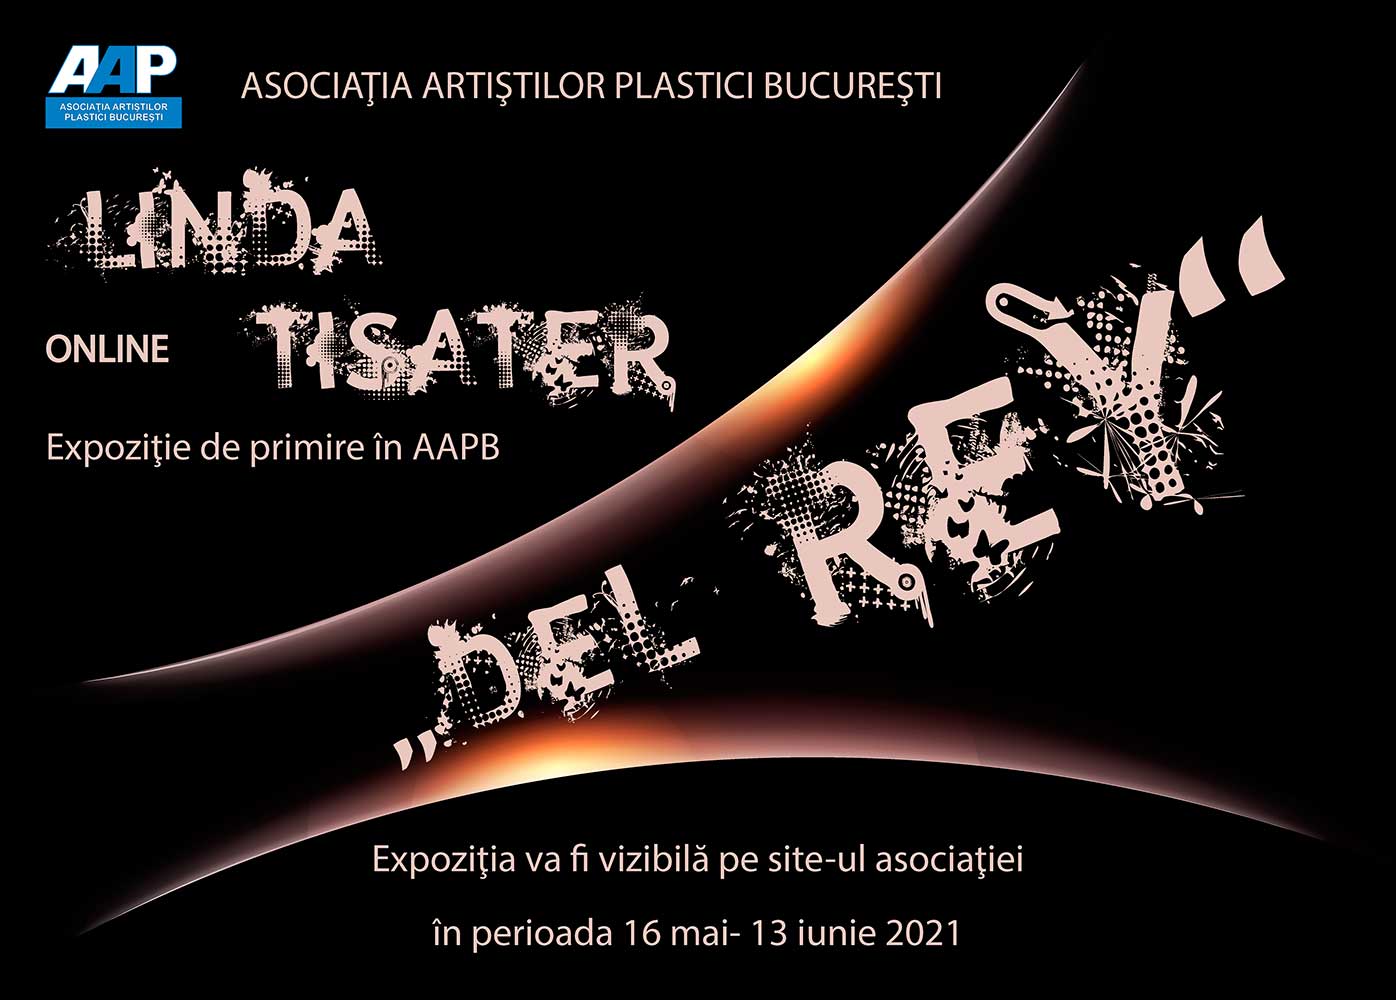 Afiş Linda Tisater - „Del Rey” - expoziţie primire în AAPB - (16 mai - 13 iunie 2021) - ONLINE